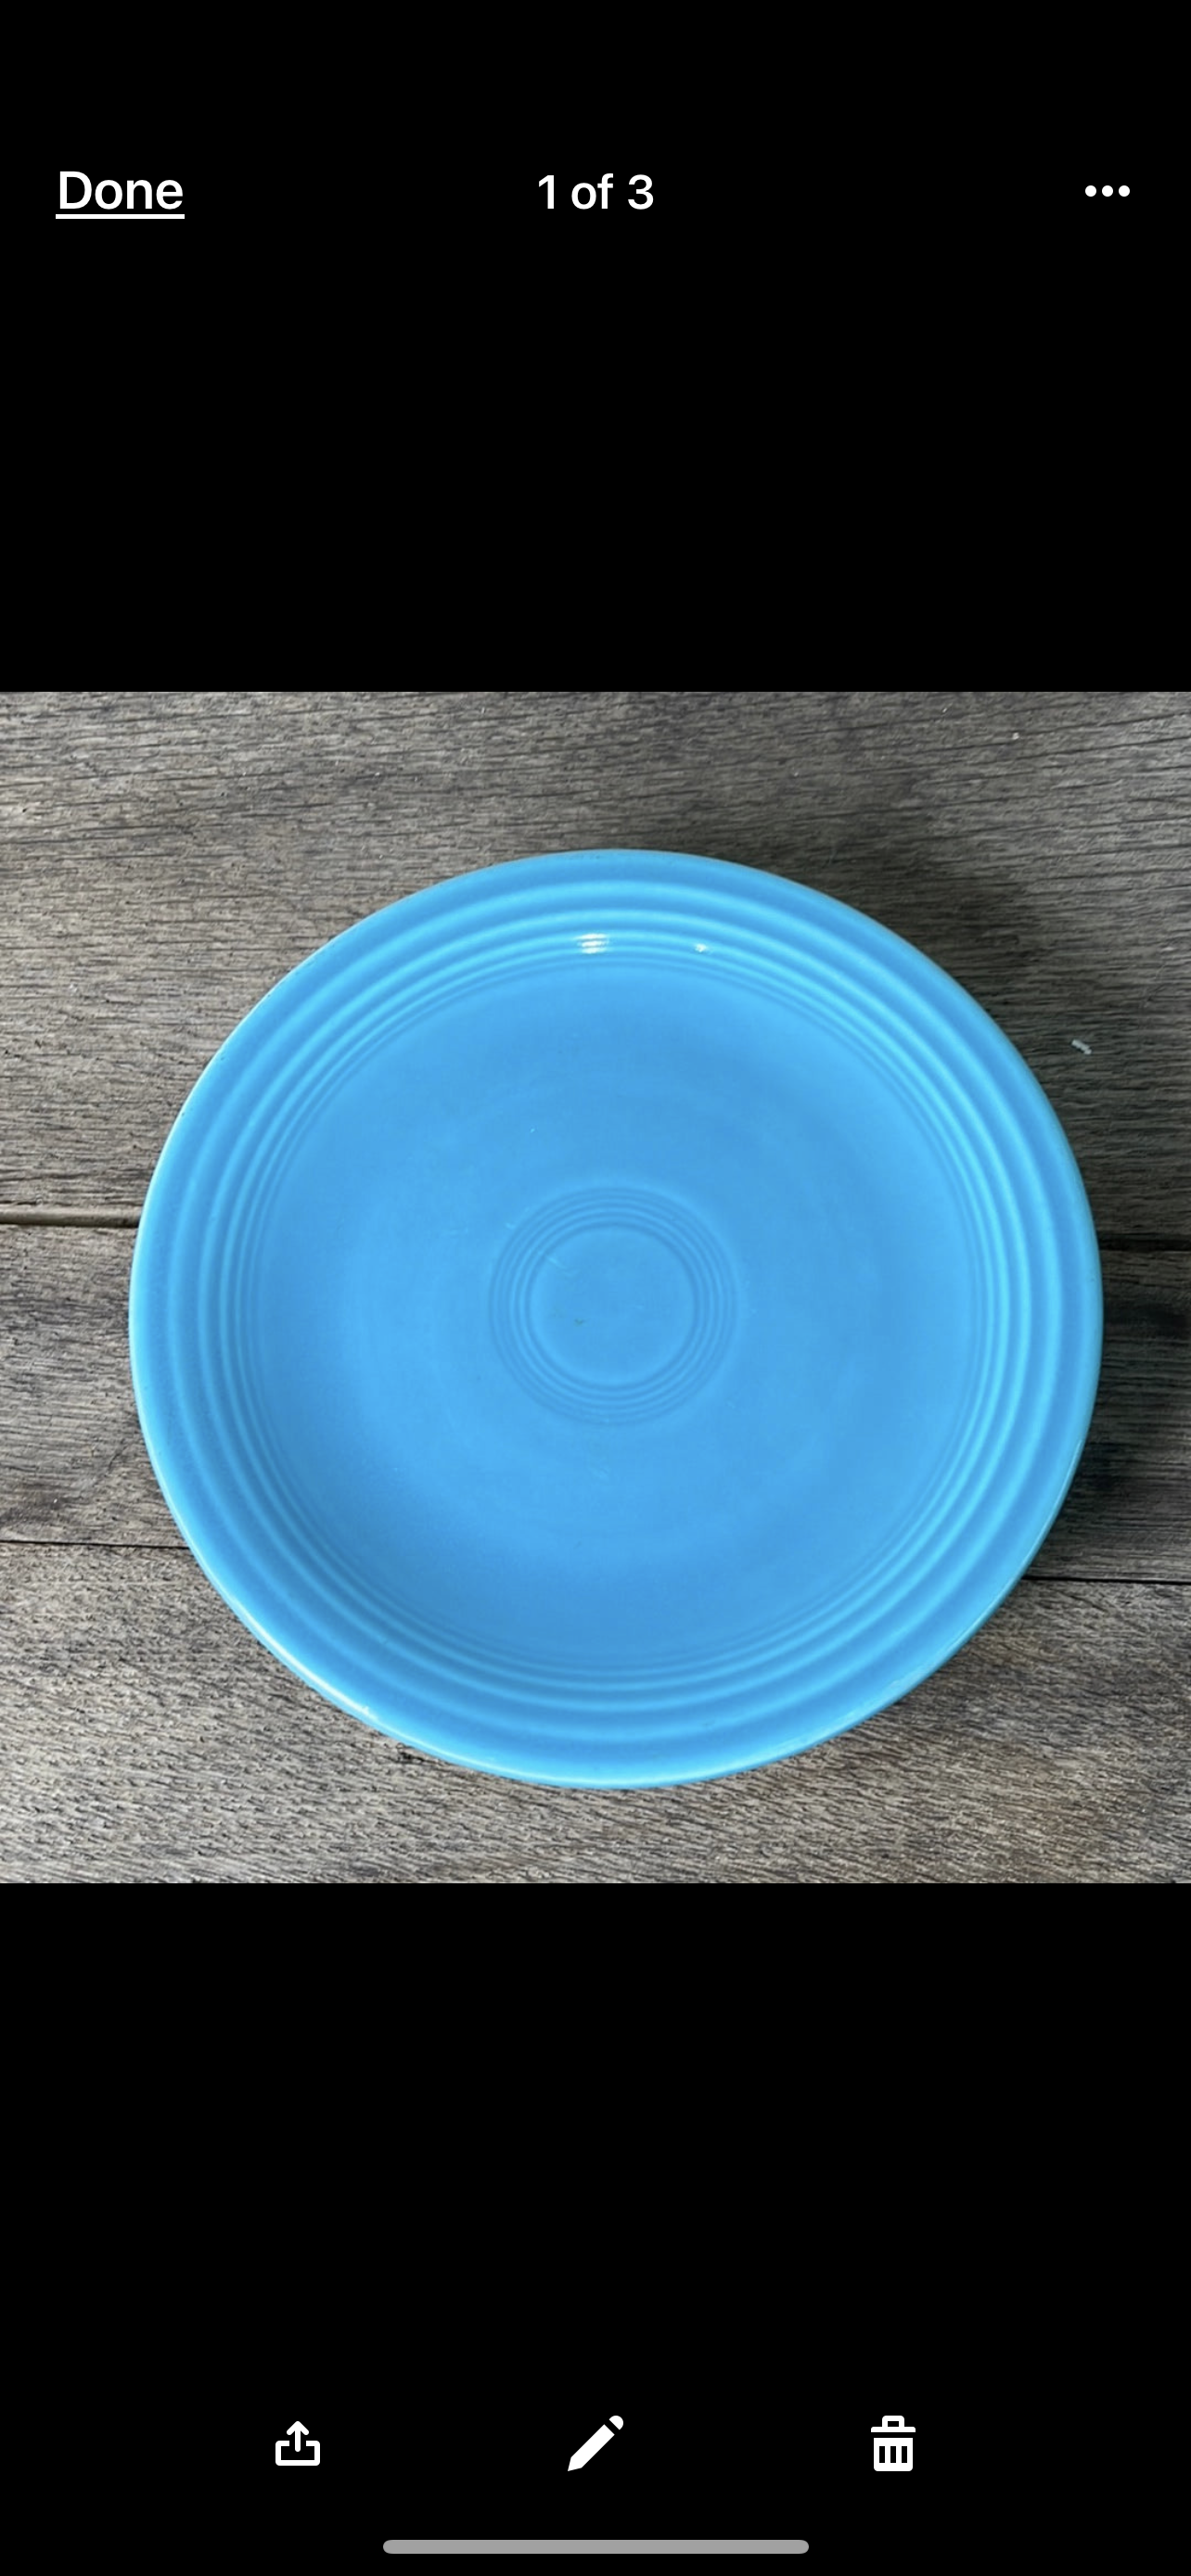 Vintage Fiestaware Turquoise Salad Plate from Fiestaware